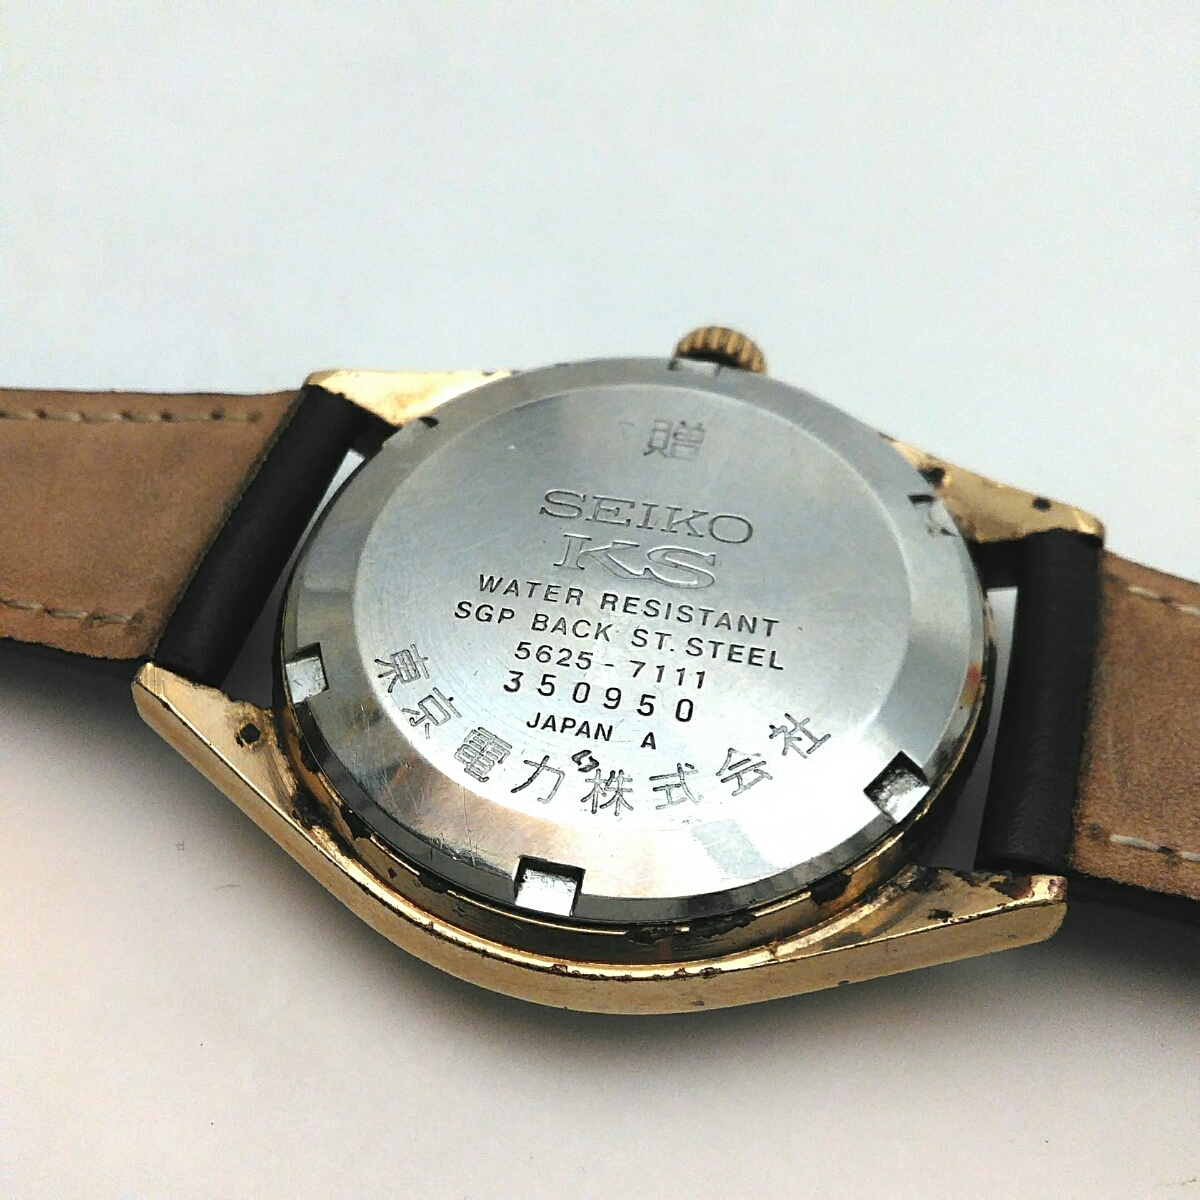  原文:SEIKO KS キングセイコー HI-BEAT ハイビート 諏訪工場 1973年製 25石 オートマチック 自動巻き 動作品 腕時計 5625-7111